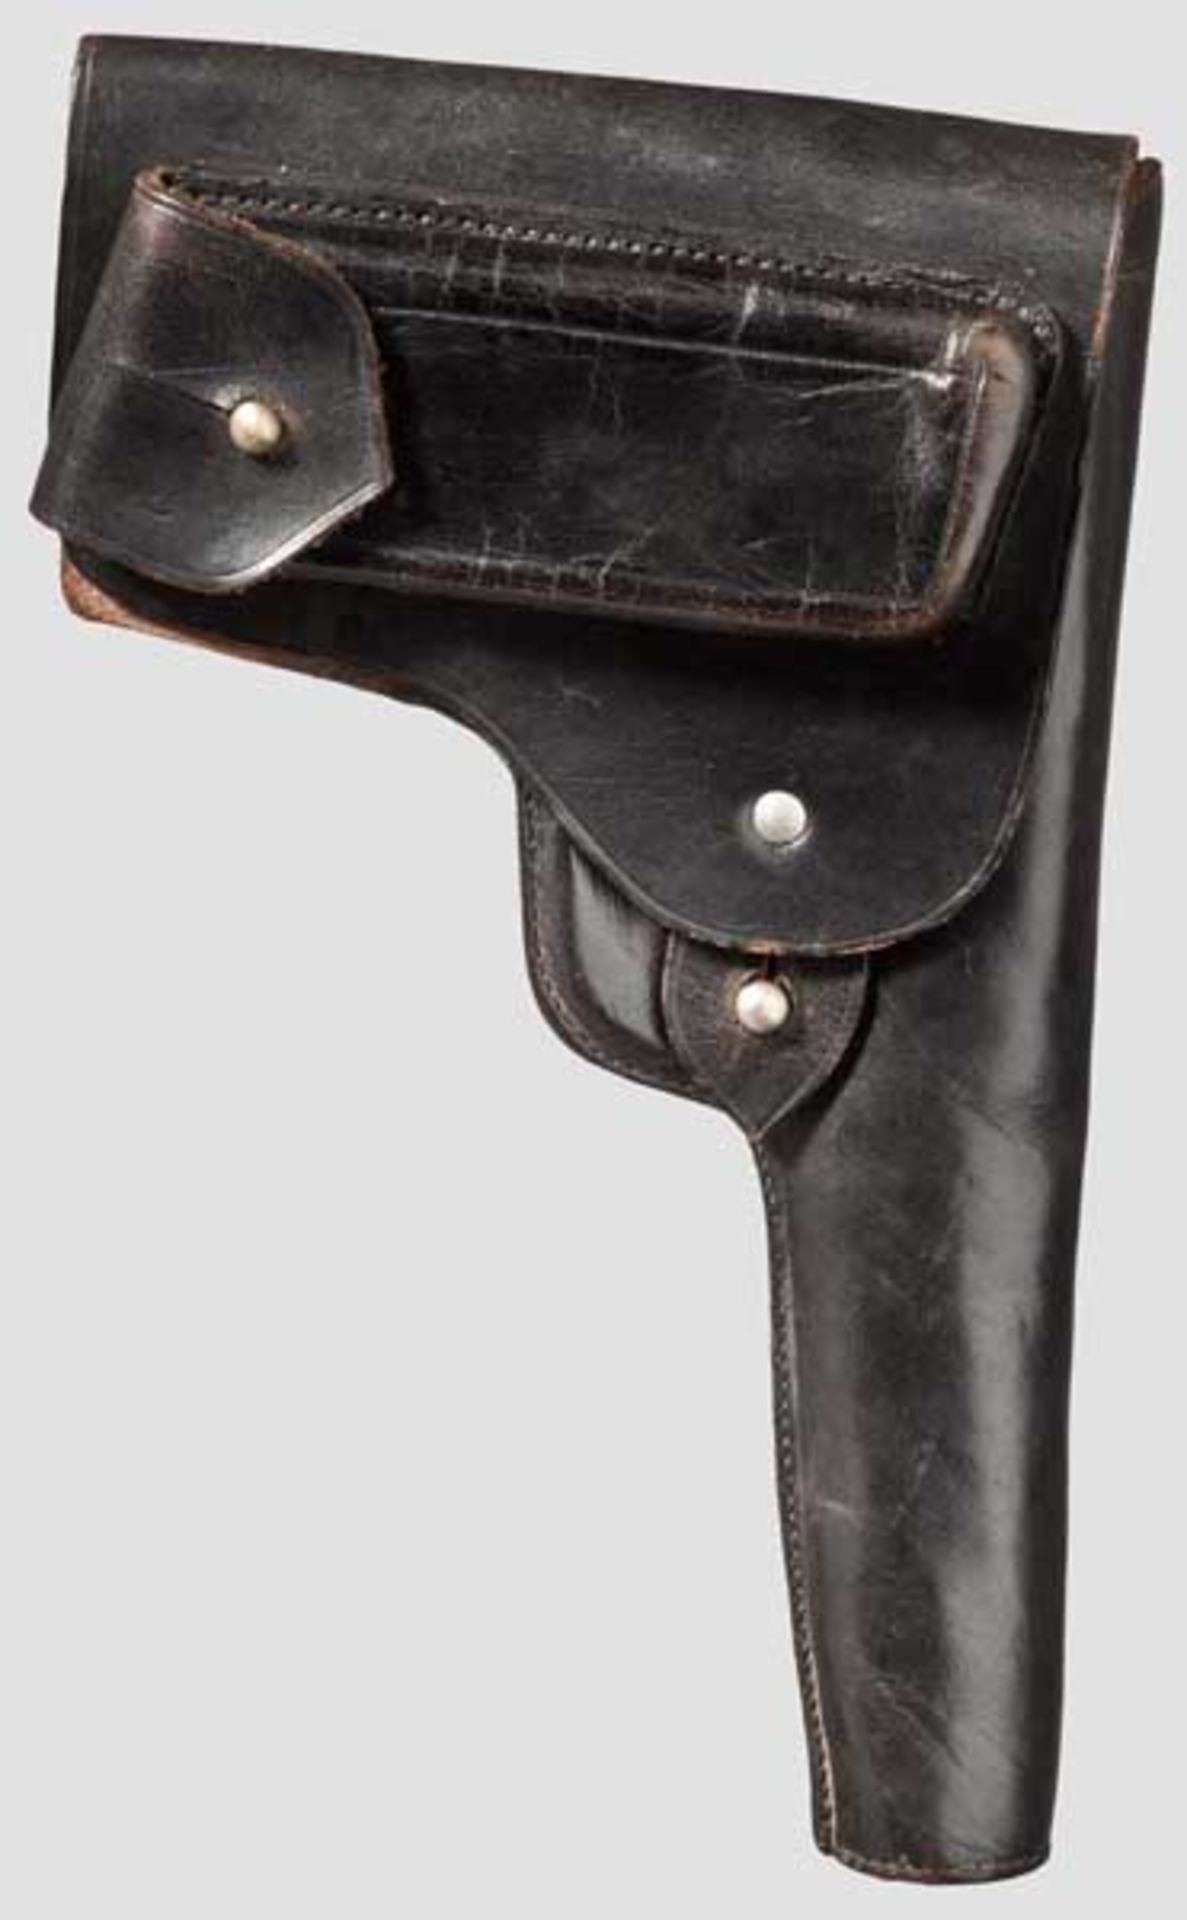 Tasche für Astra 600 bzw. 800 Condor Aus schwarzem Glattleder, Magazinfach ungewöhnlich auf dem